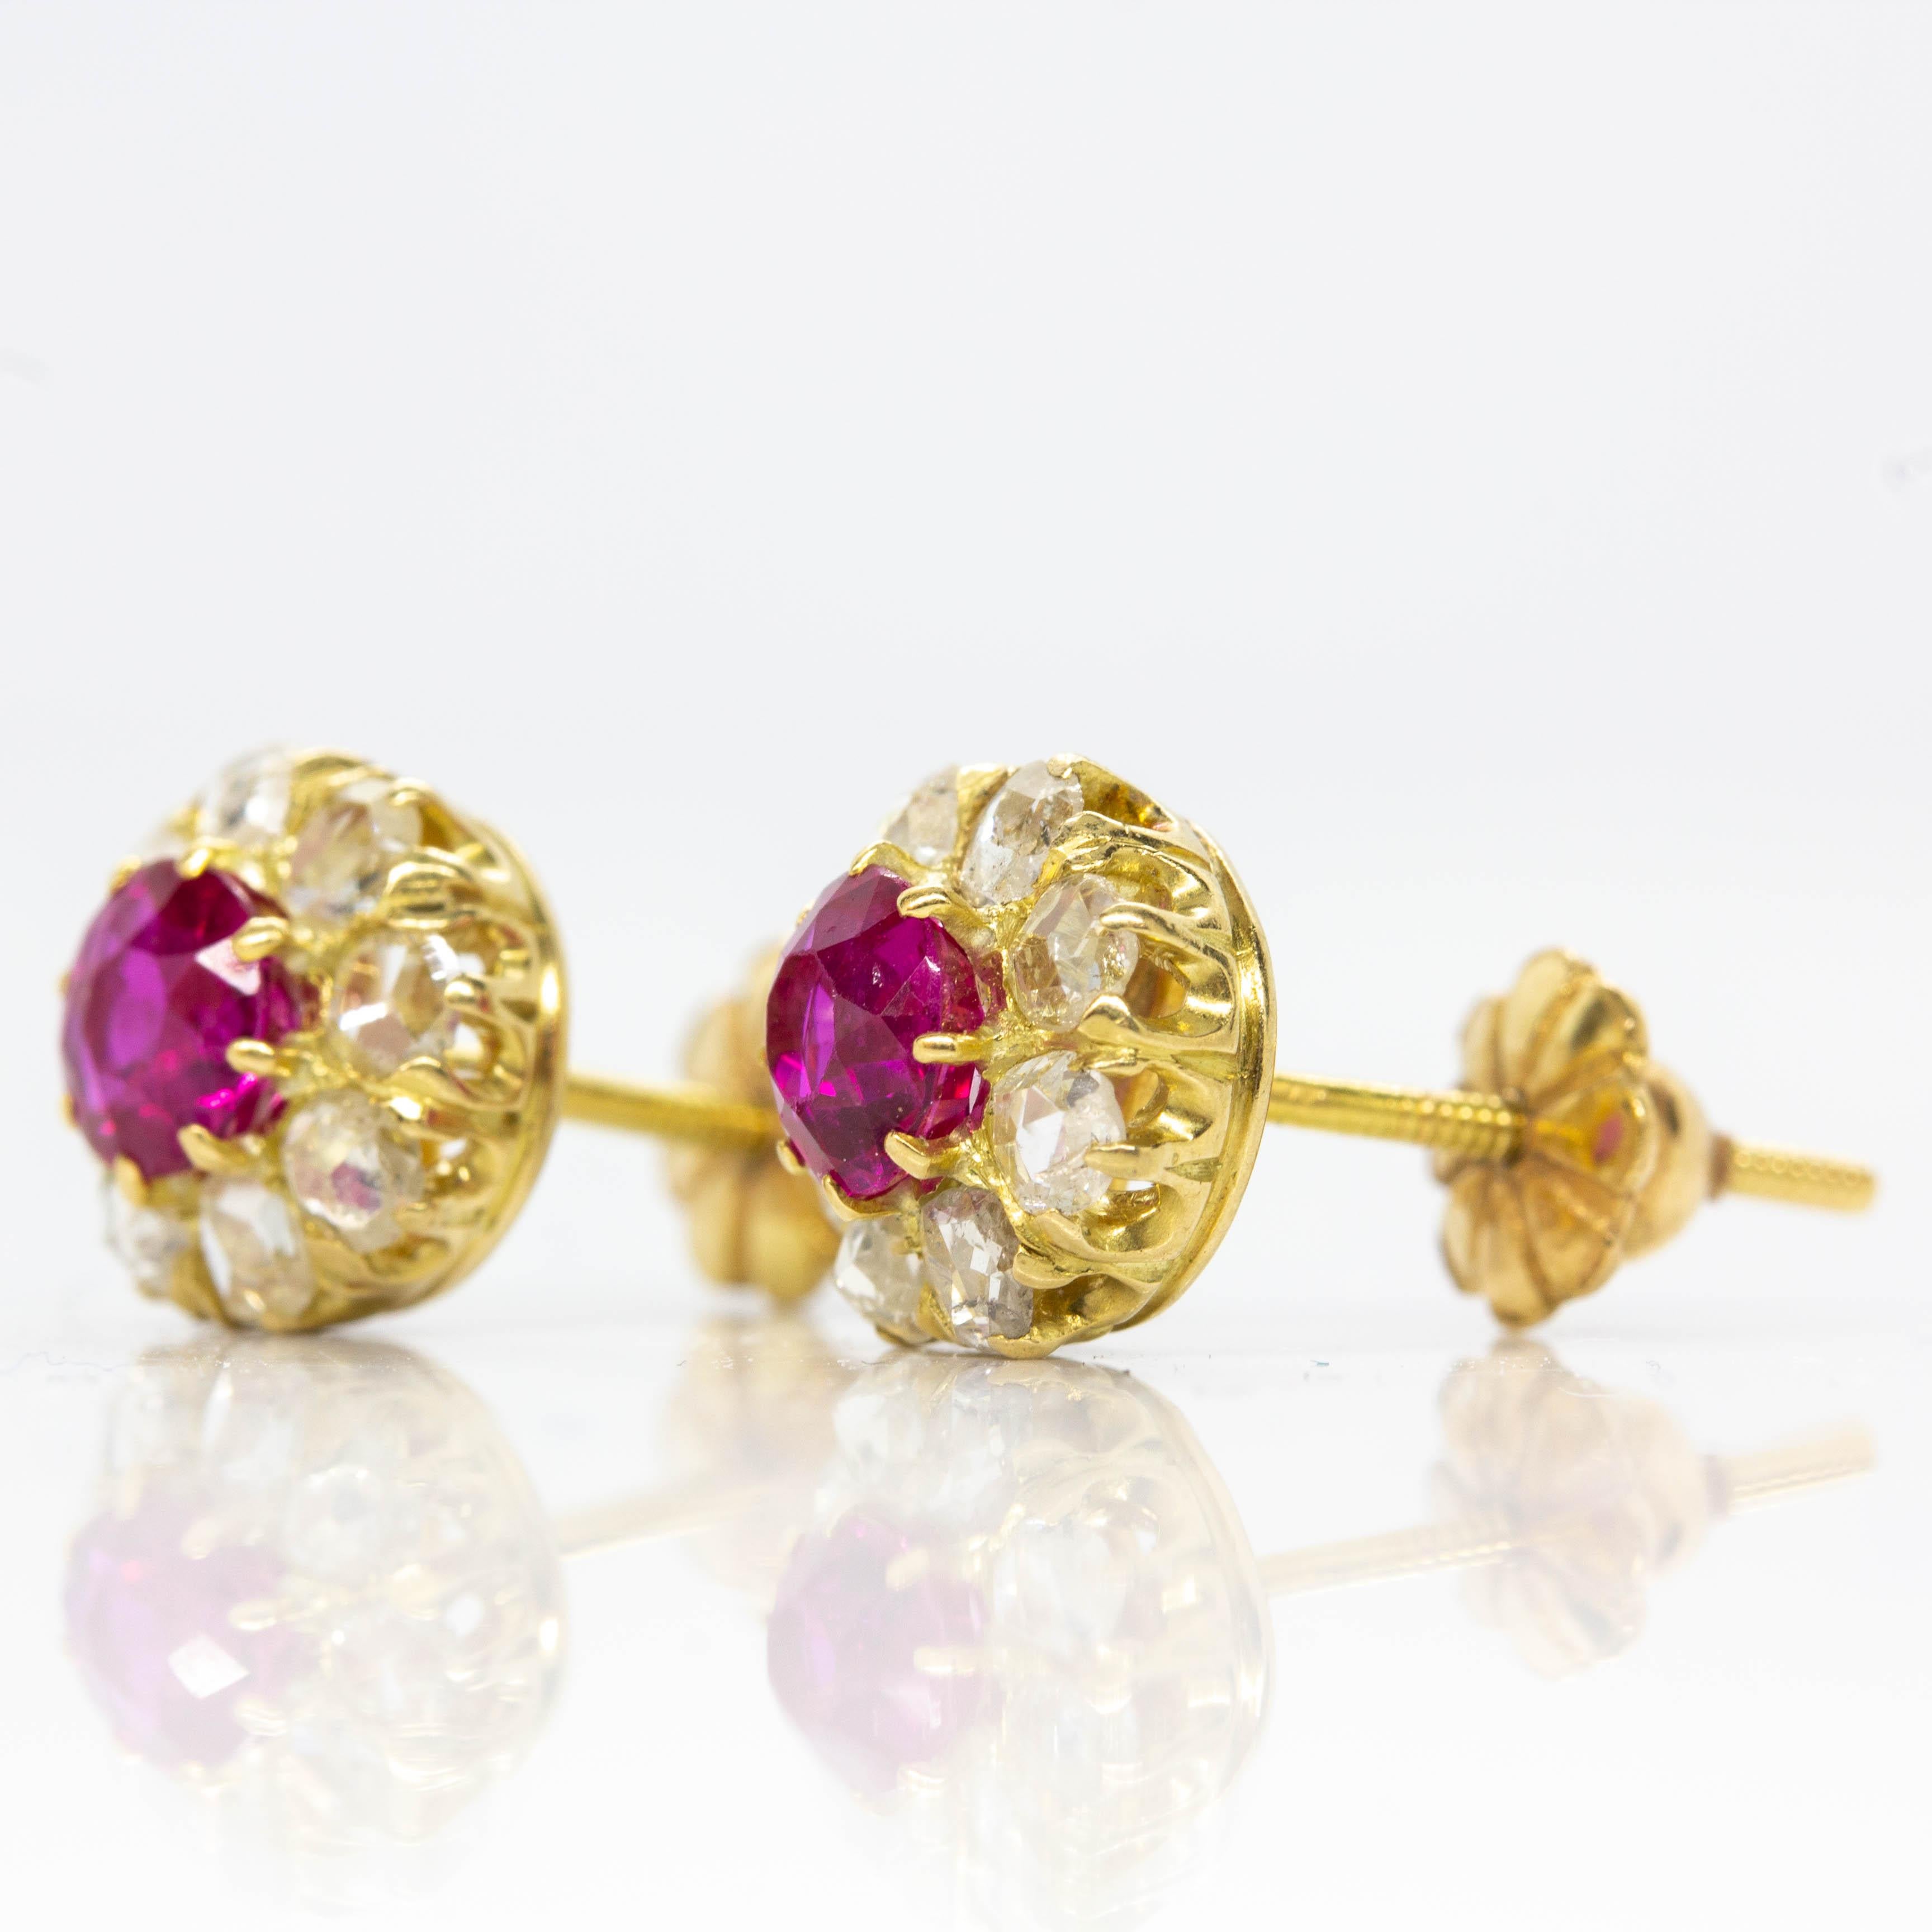 Victorian 18K Gold Rubies and Diamonds Earrings (Viktorianisch)